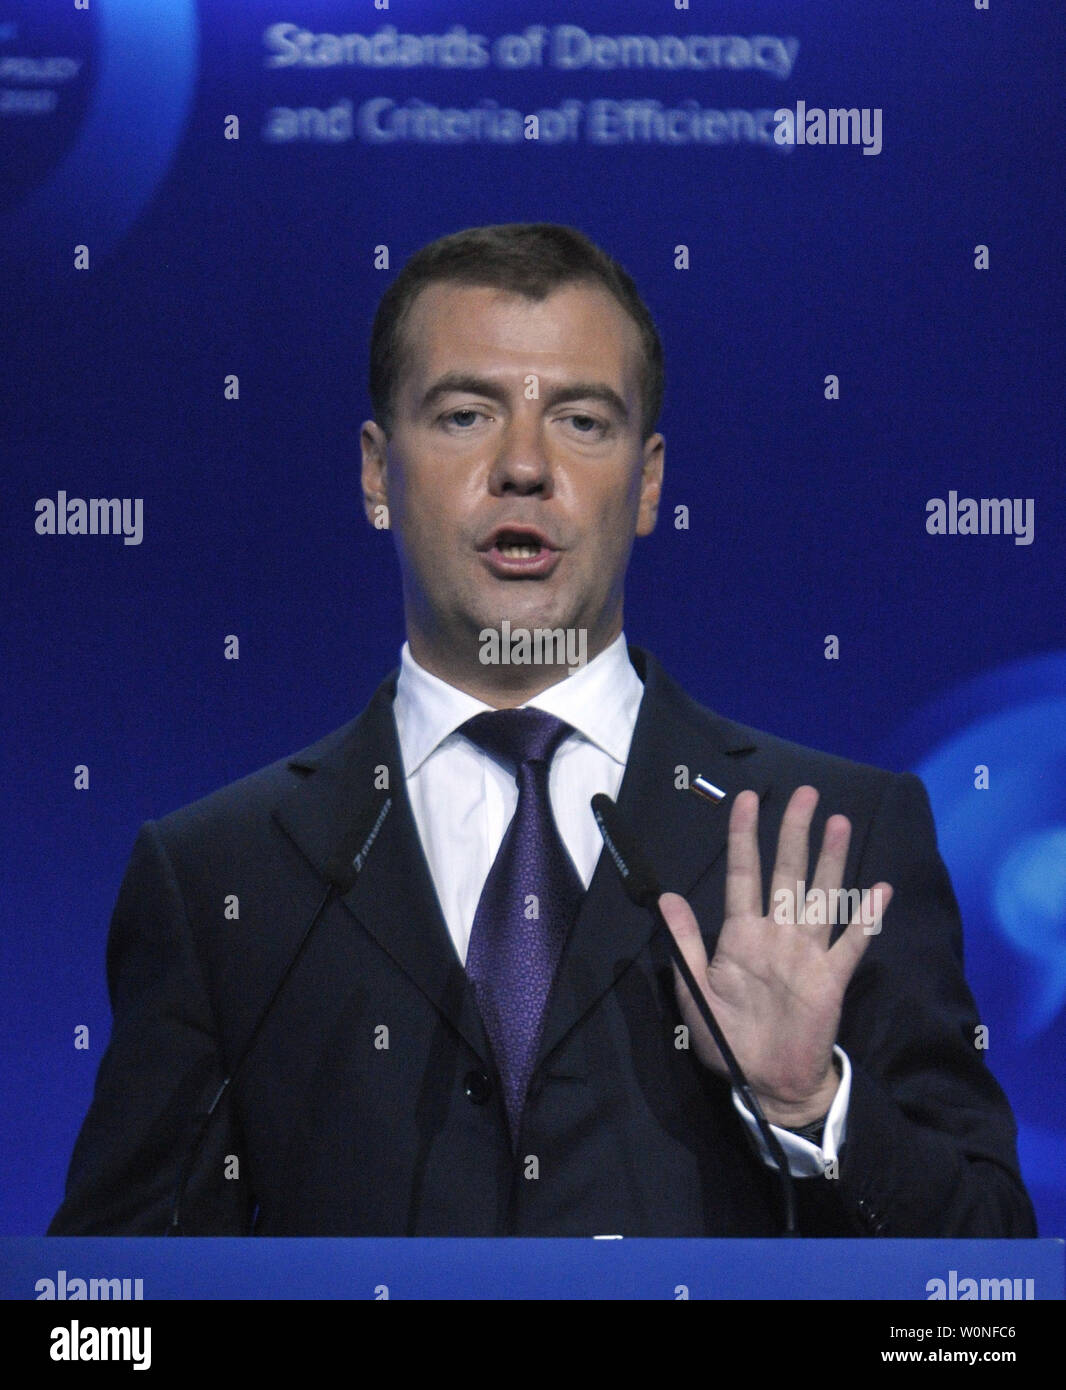 Der russische Präsident Dmitri Medwedew spricht an der Global Policy Forum in Jaroslawl am 10. September 2010. Medwedew sagte am Freitag "ich kategorisch nicht mit denen, die behaupten, dass es keine Demokratie in Russland, dass es durch die autoritäre Tradition ausgeschlossen ist damit einverstanden." UPI/Alex Volgin Stockfoto